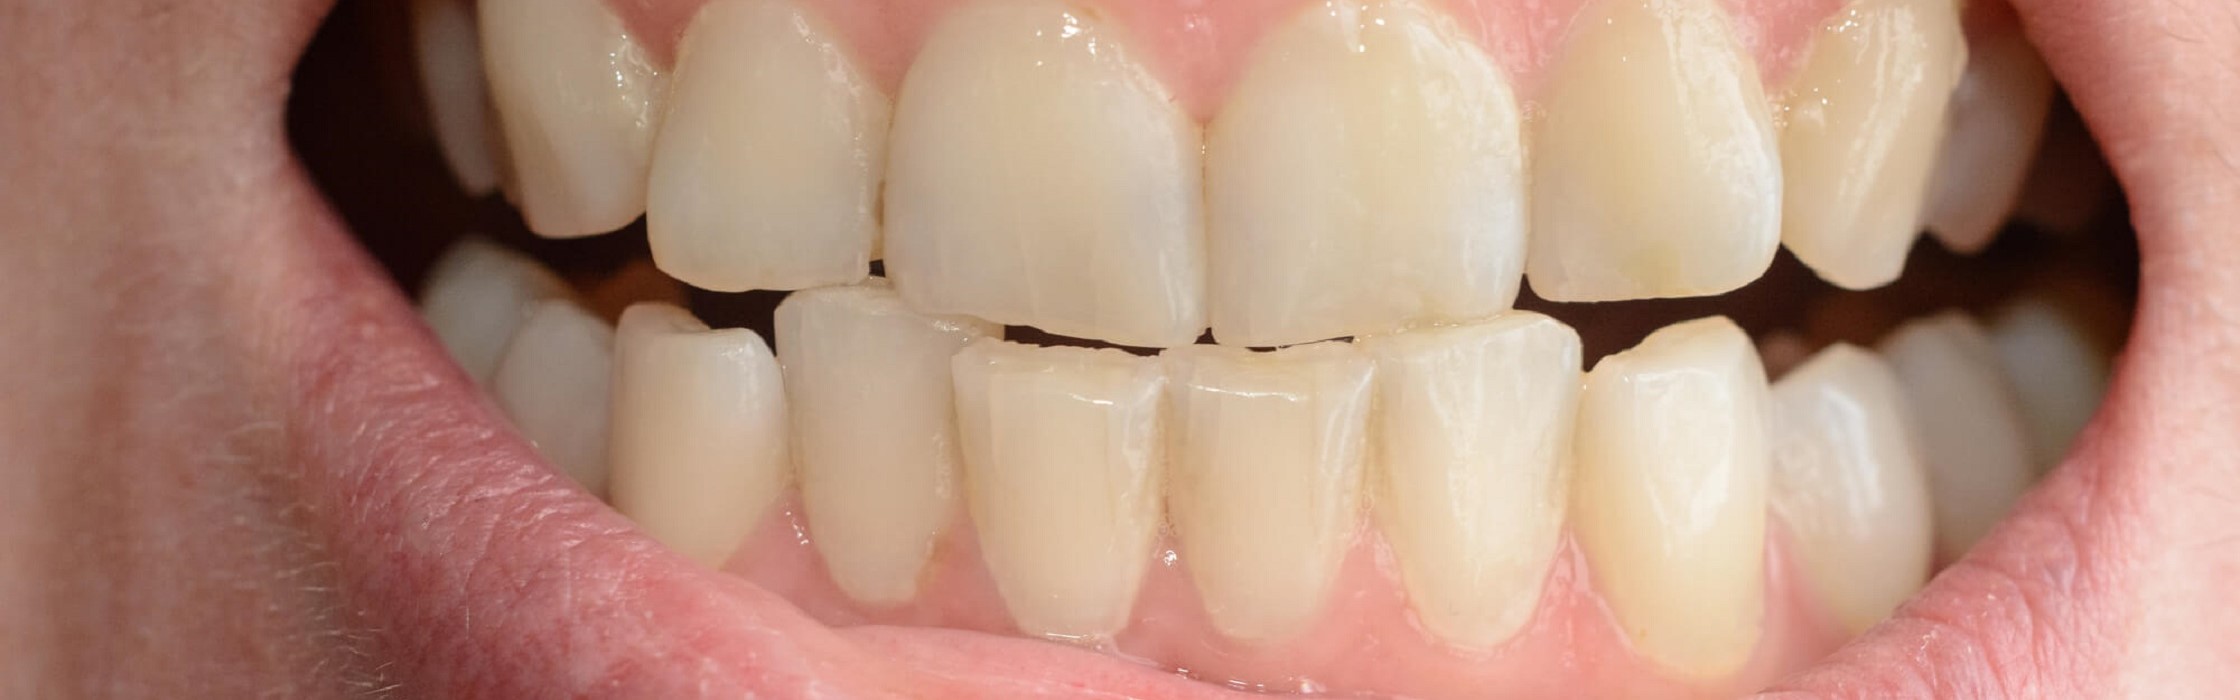 Approximale Zahnschmelzreduktion – Stripping schafft mehr Platz bei Engständen in der Zahnreihe